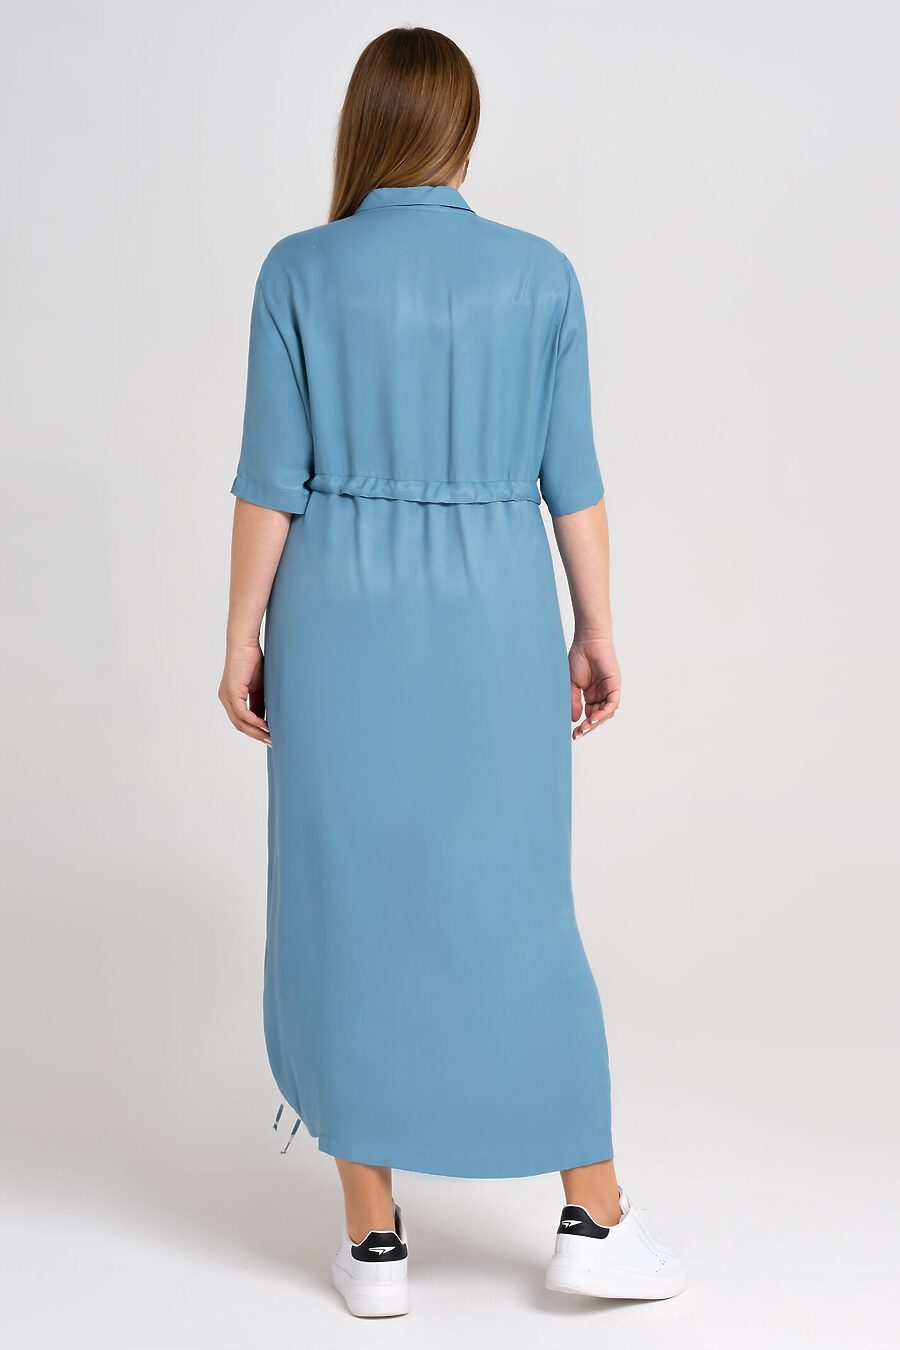 Платье для женщин PANDA 683836 купить оптом от производителя. Совместная покупка женской одежды в OptMoyo